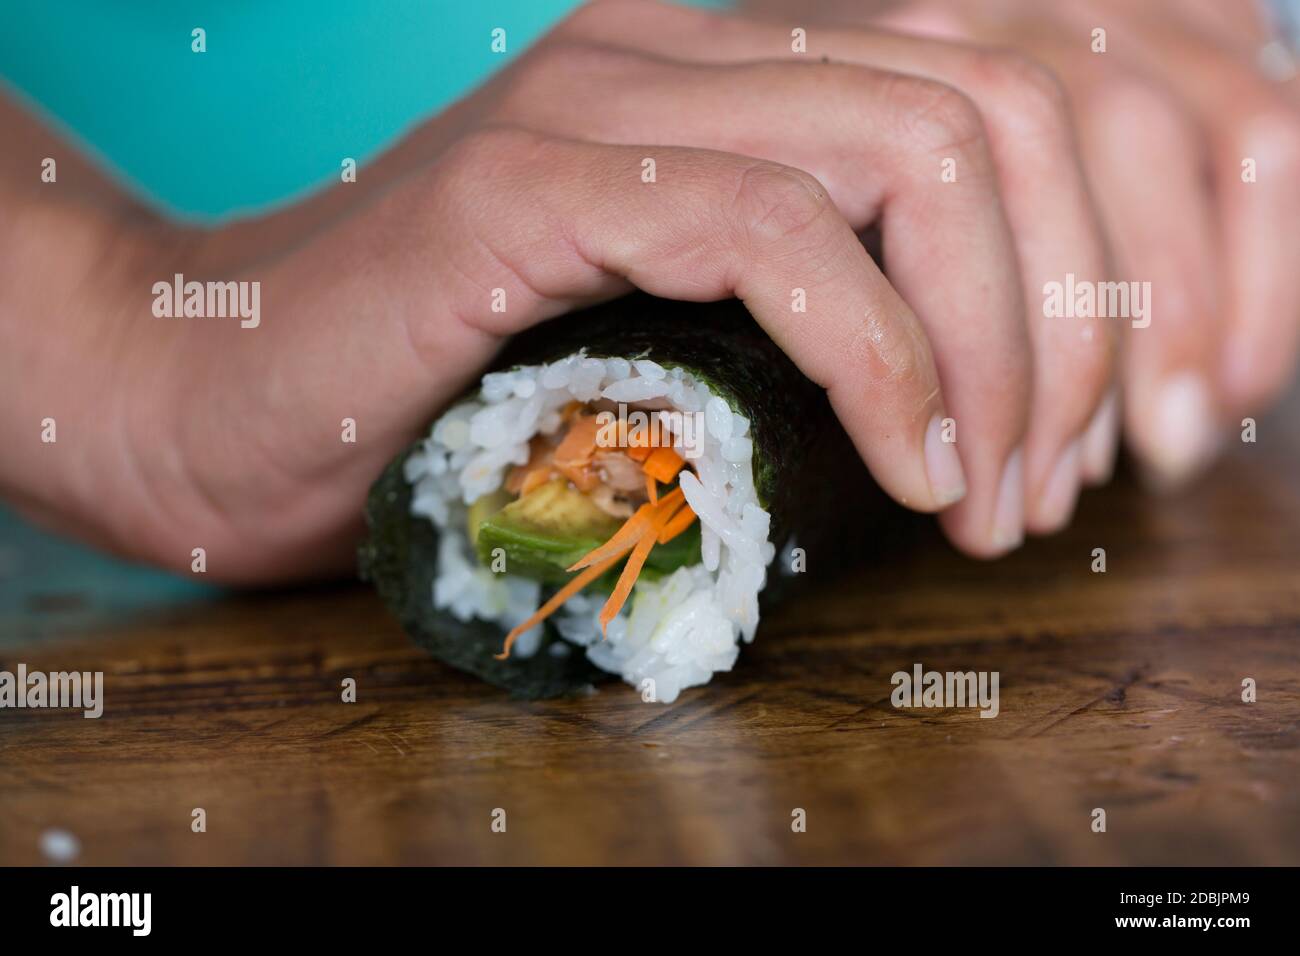 Kimi Werner prepares salmon sushi. Stock Photo